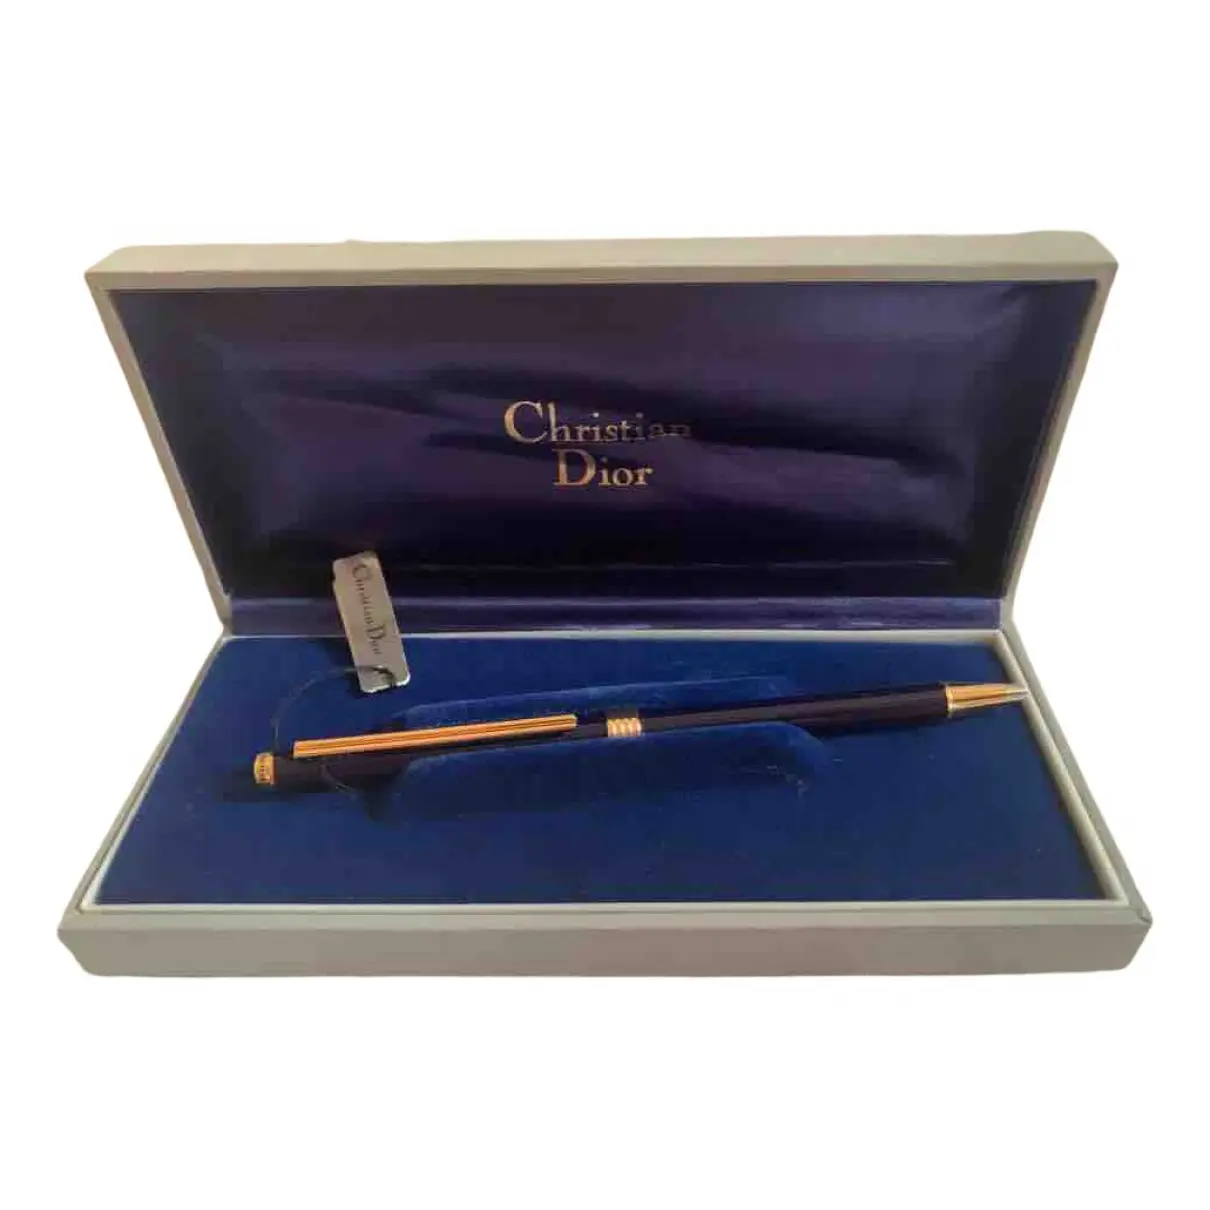 Buy Christian Dior Pen online - Vintage